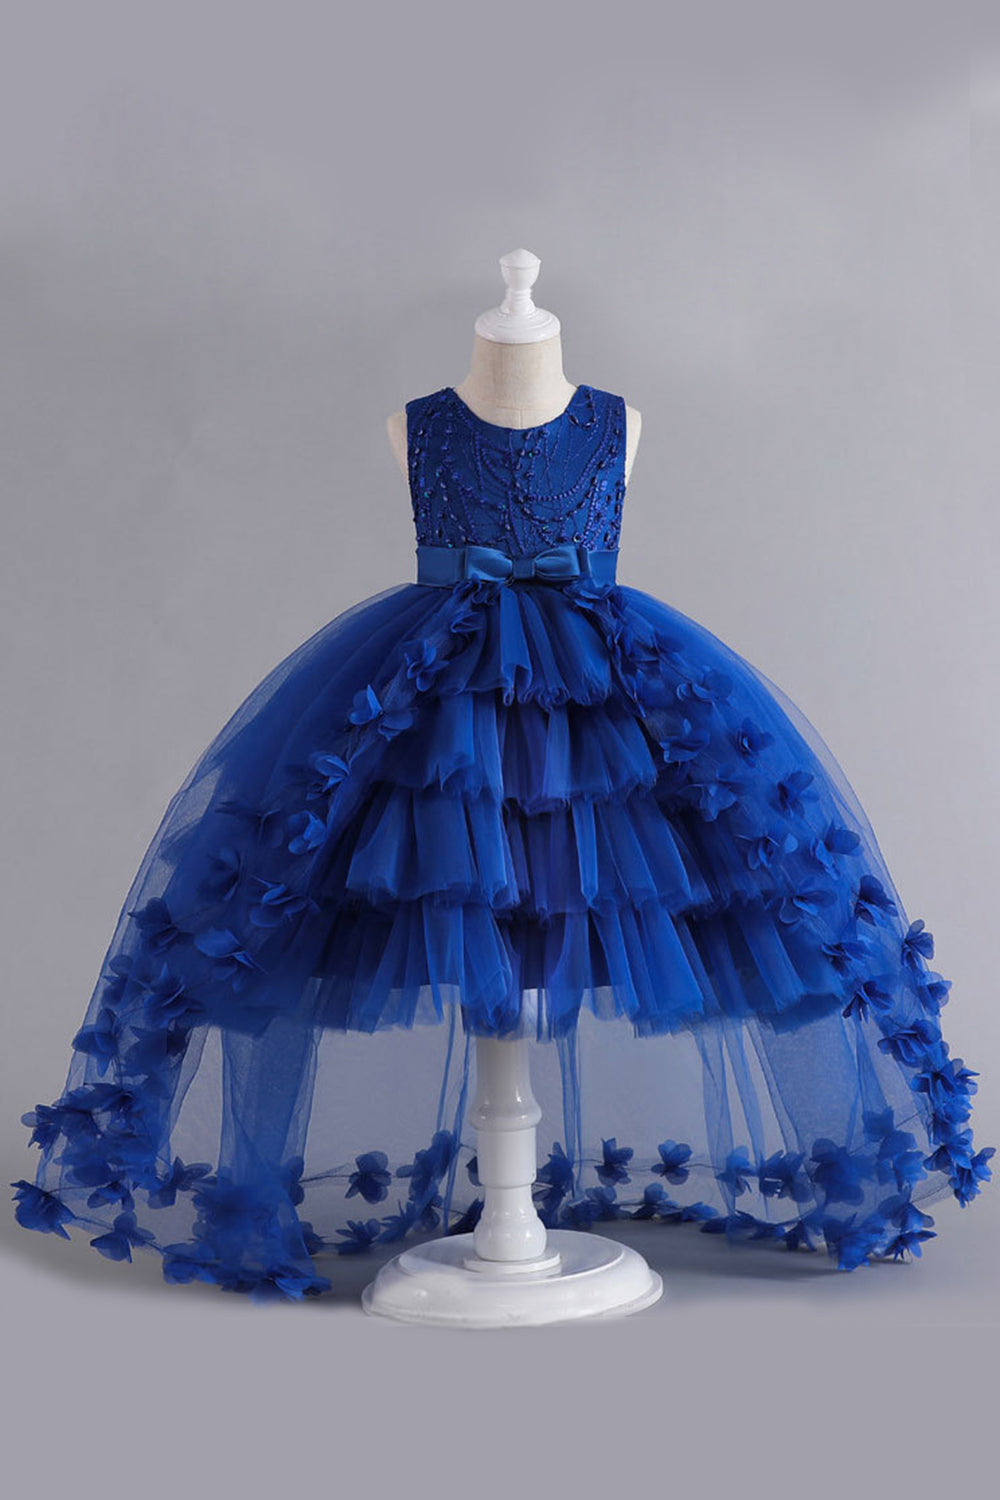 Blauwe Hoge Lage Meisjes jurk met Bowknot